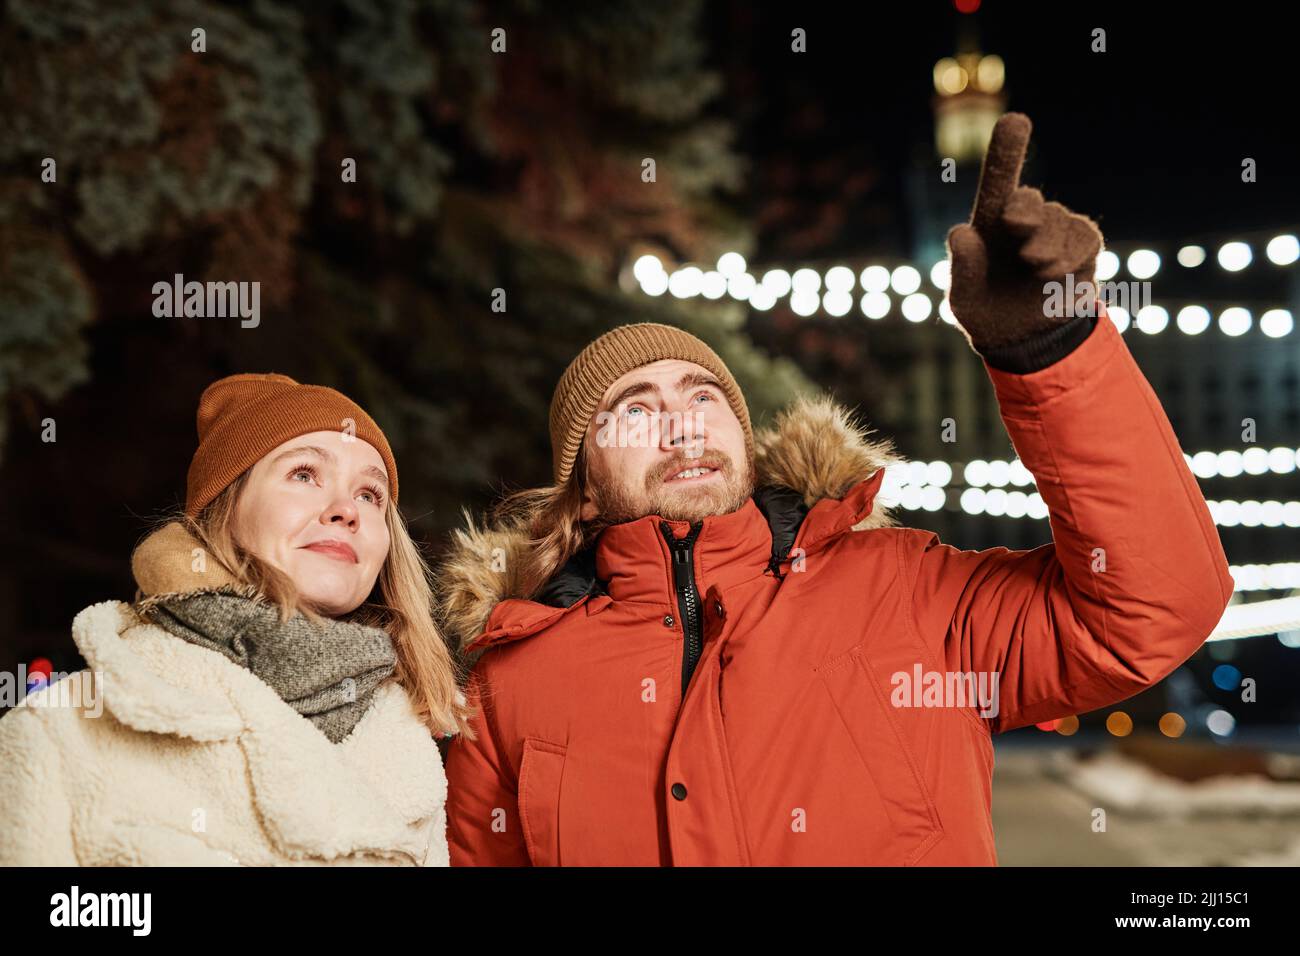 Horizontale Aufnahme eines jungen Paares, das am Winterabend spazierengeht, wobei der Mann seiner Freundin etwas zeigt Stockfoto